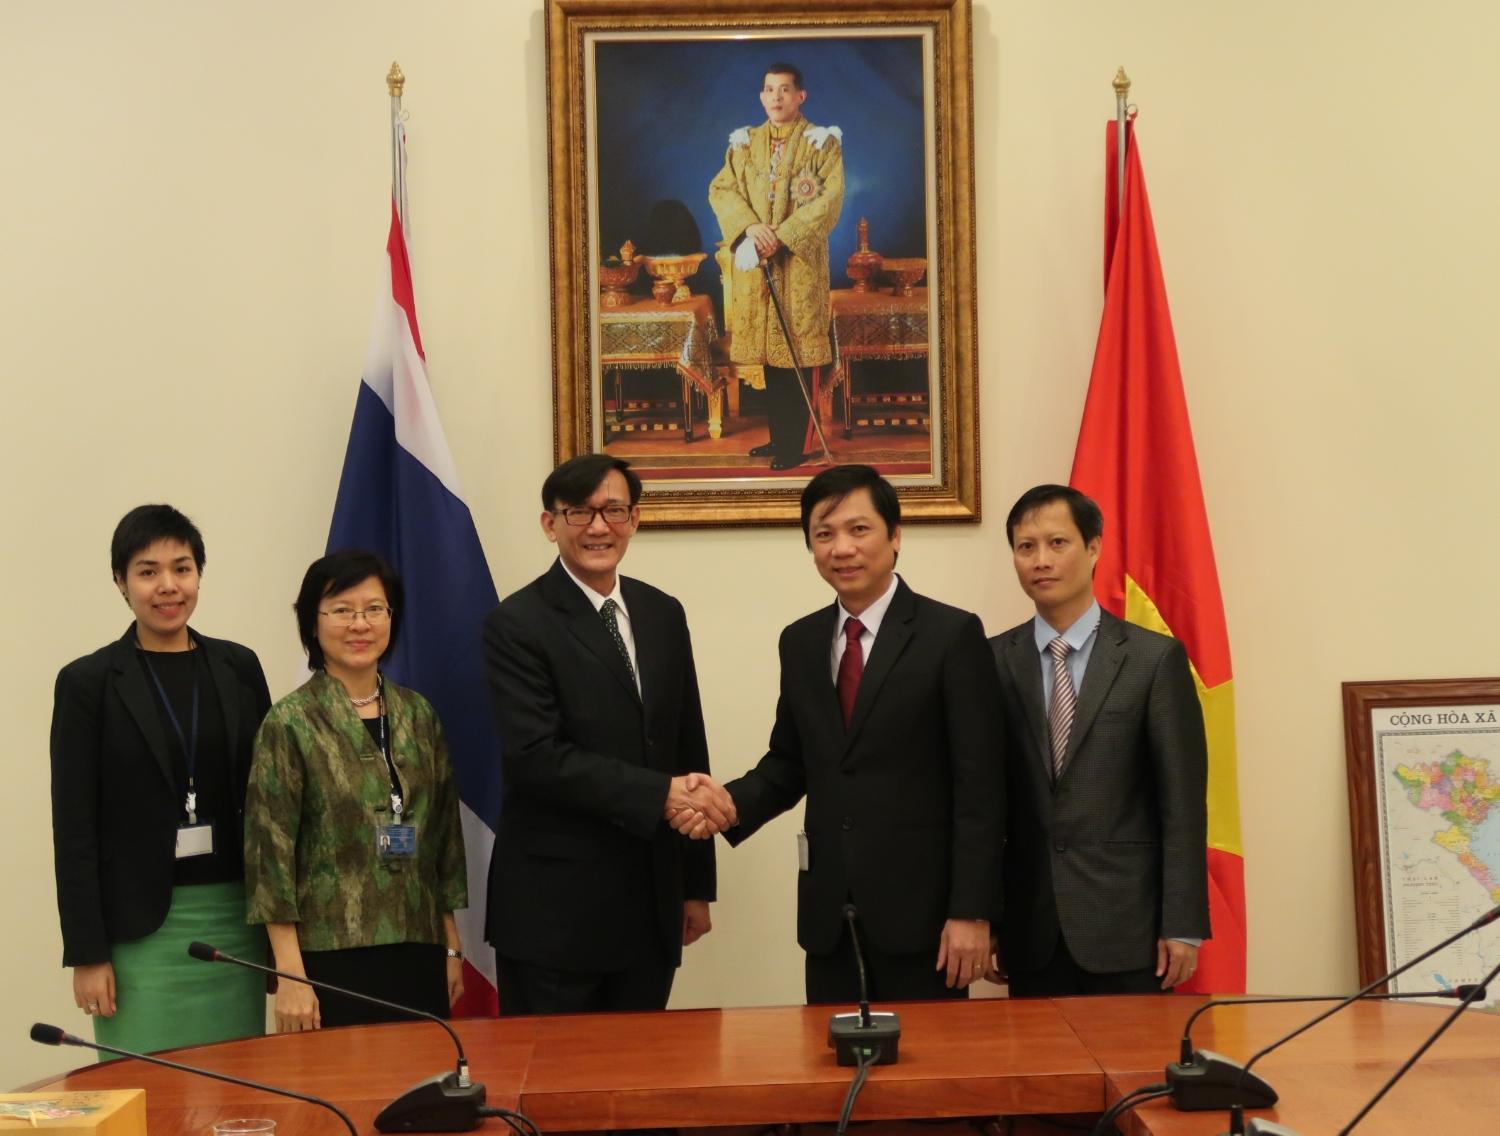 Chính phủ vương quốc Thái Lan hỗ trợ 10.000 USD khắc phục hậu quả bão lũ tại tỉnh Quảng Trị